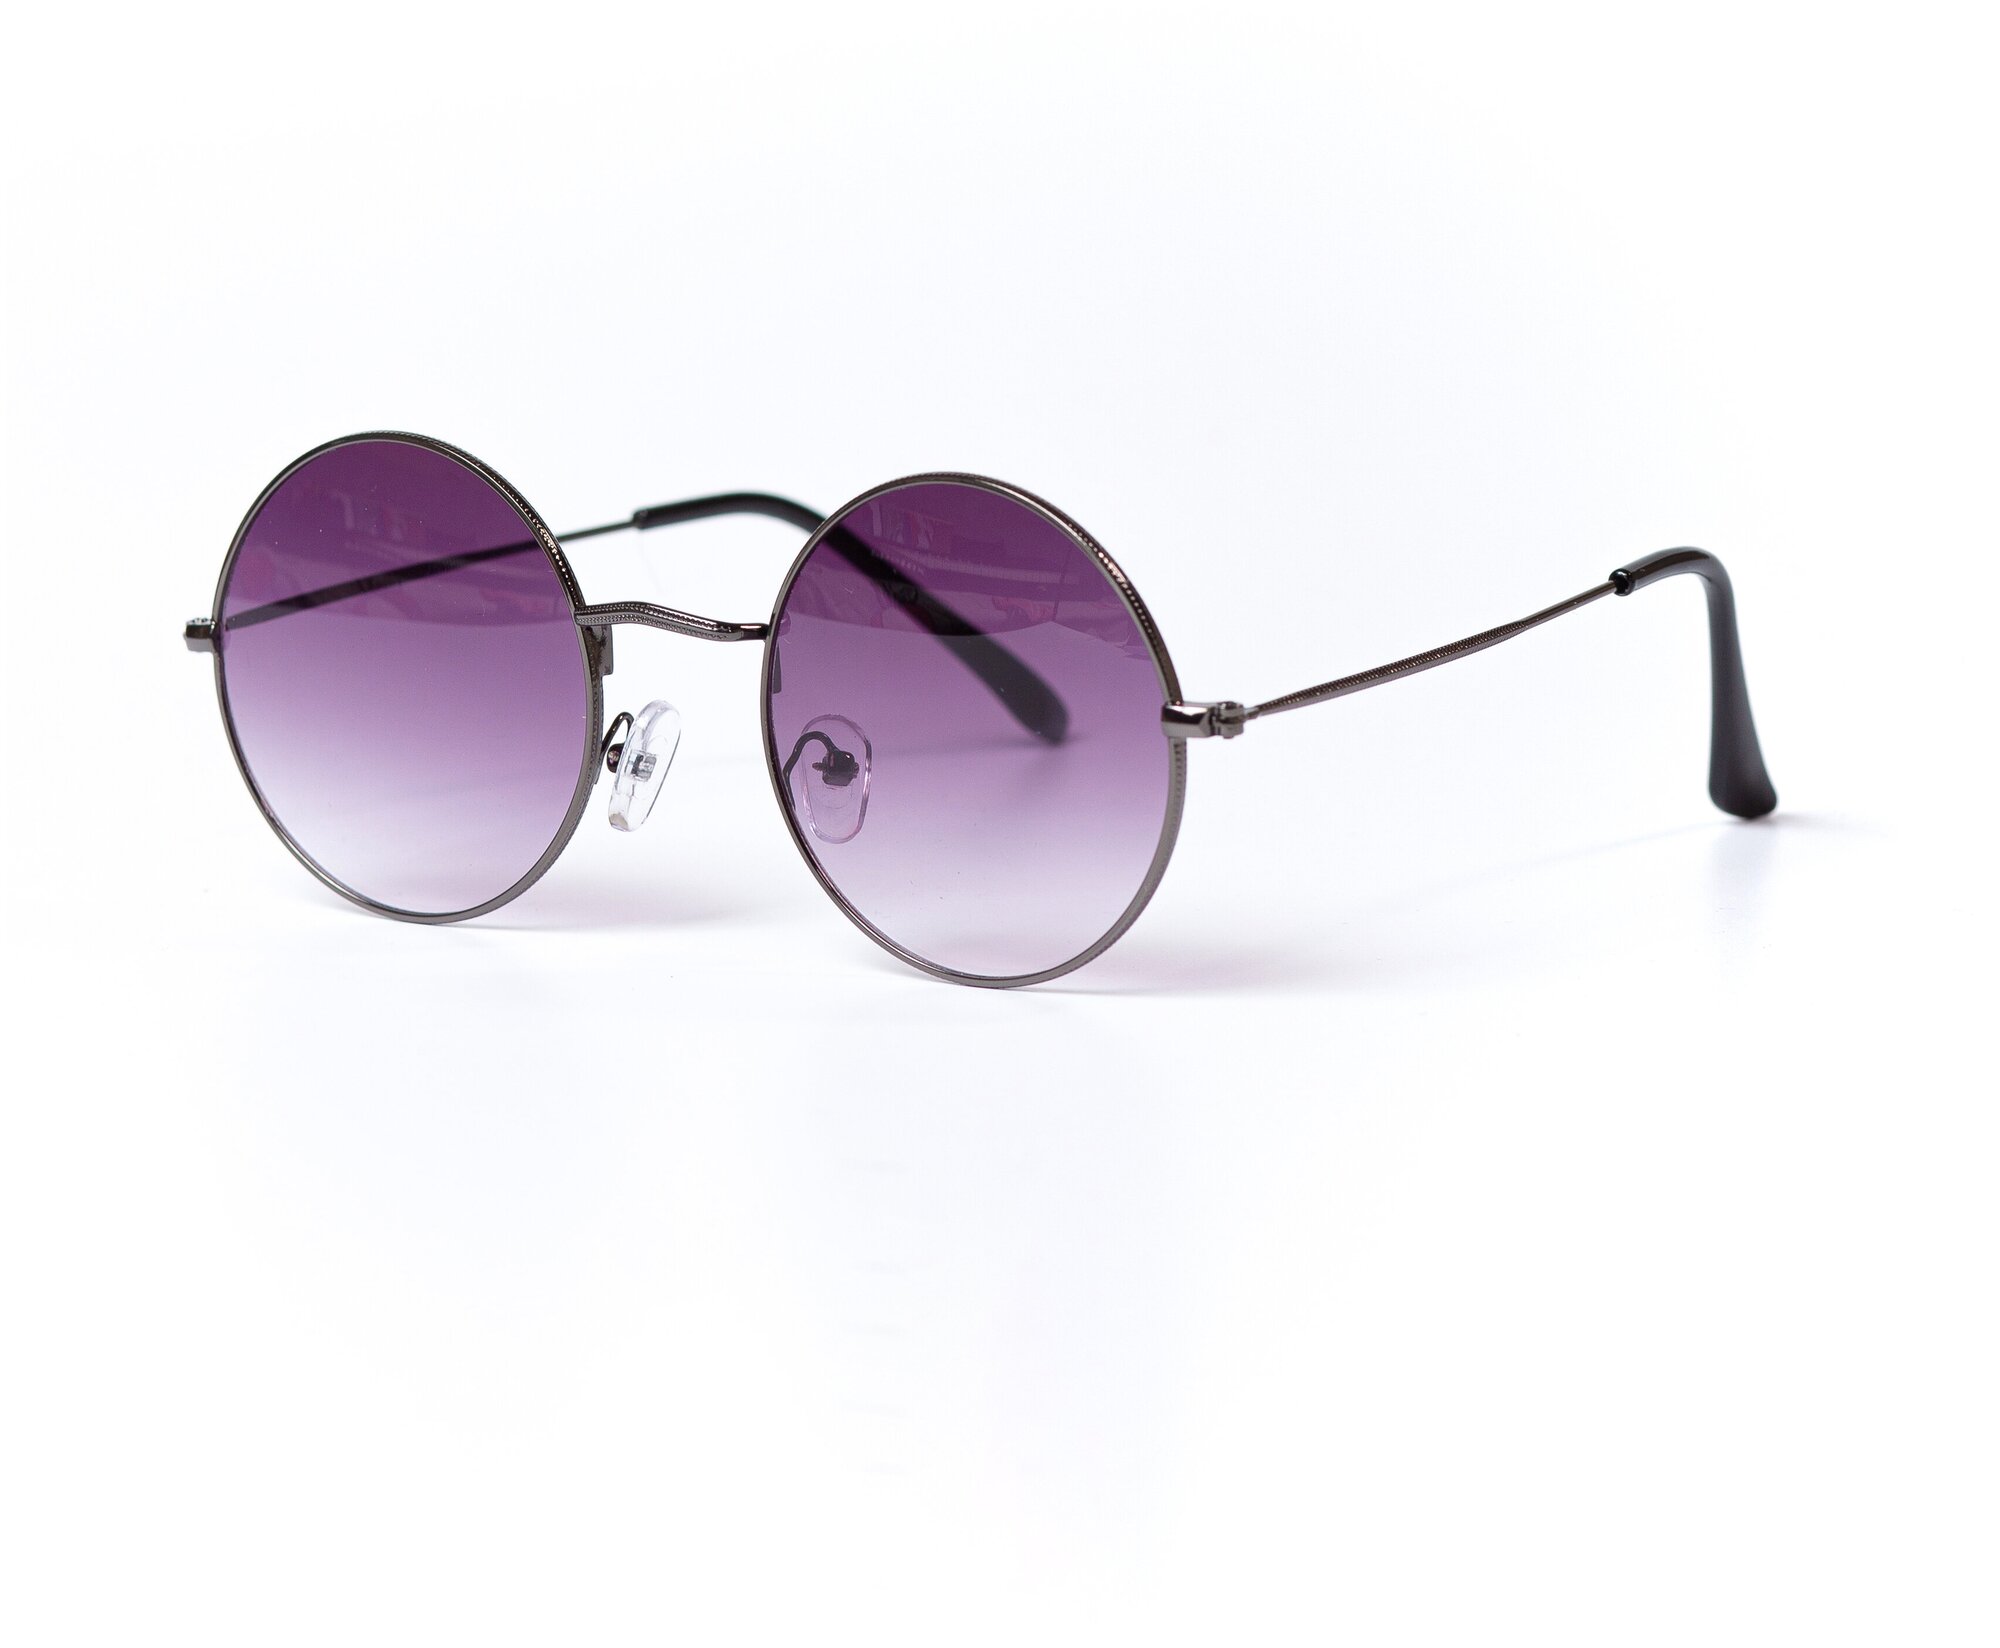 Солнцезащитные очки женские / Оправа круглая / Стильные очки / Ультрафиолетовый фильтр / Защита UV400 / Чехол в подарок 090322193